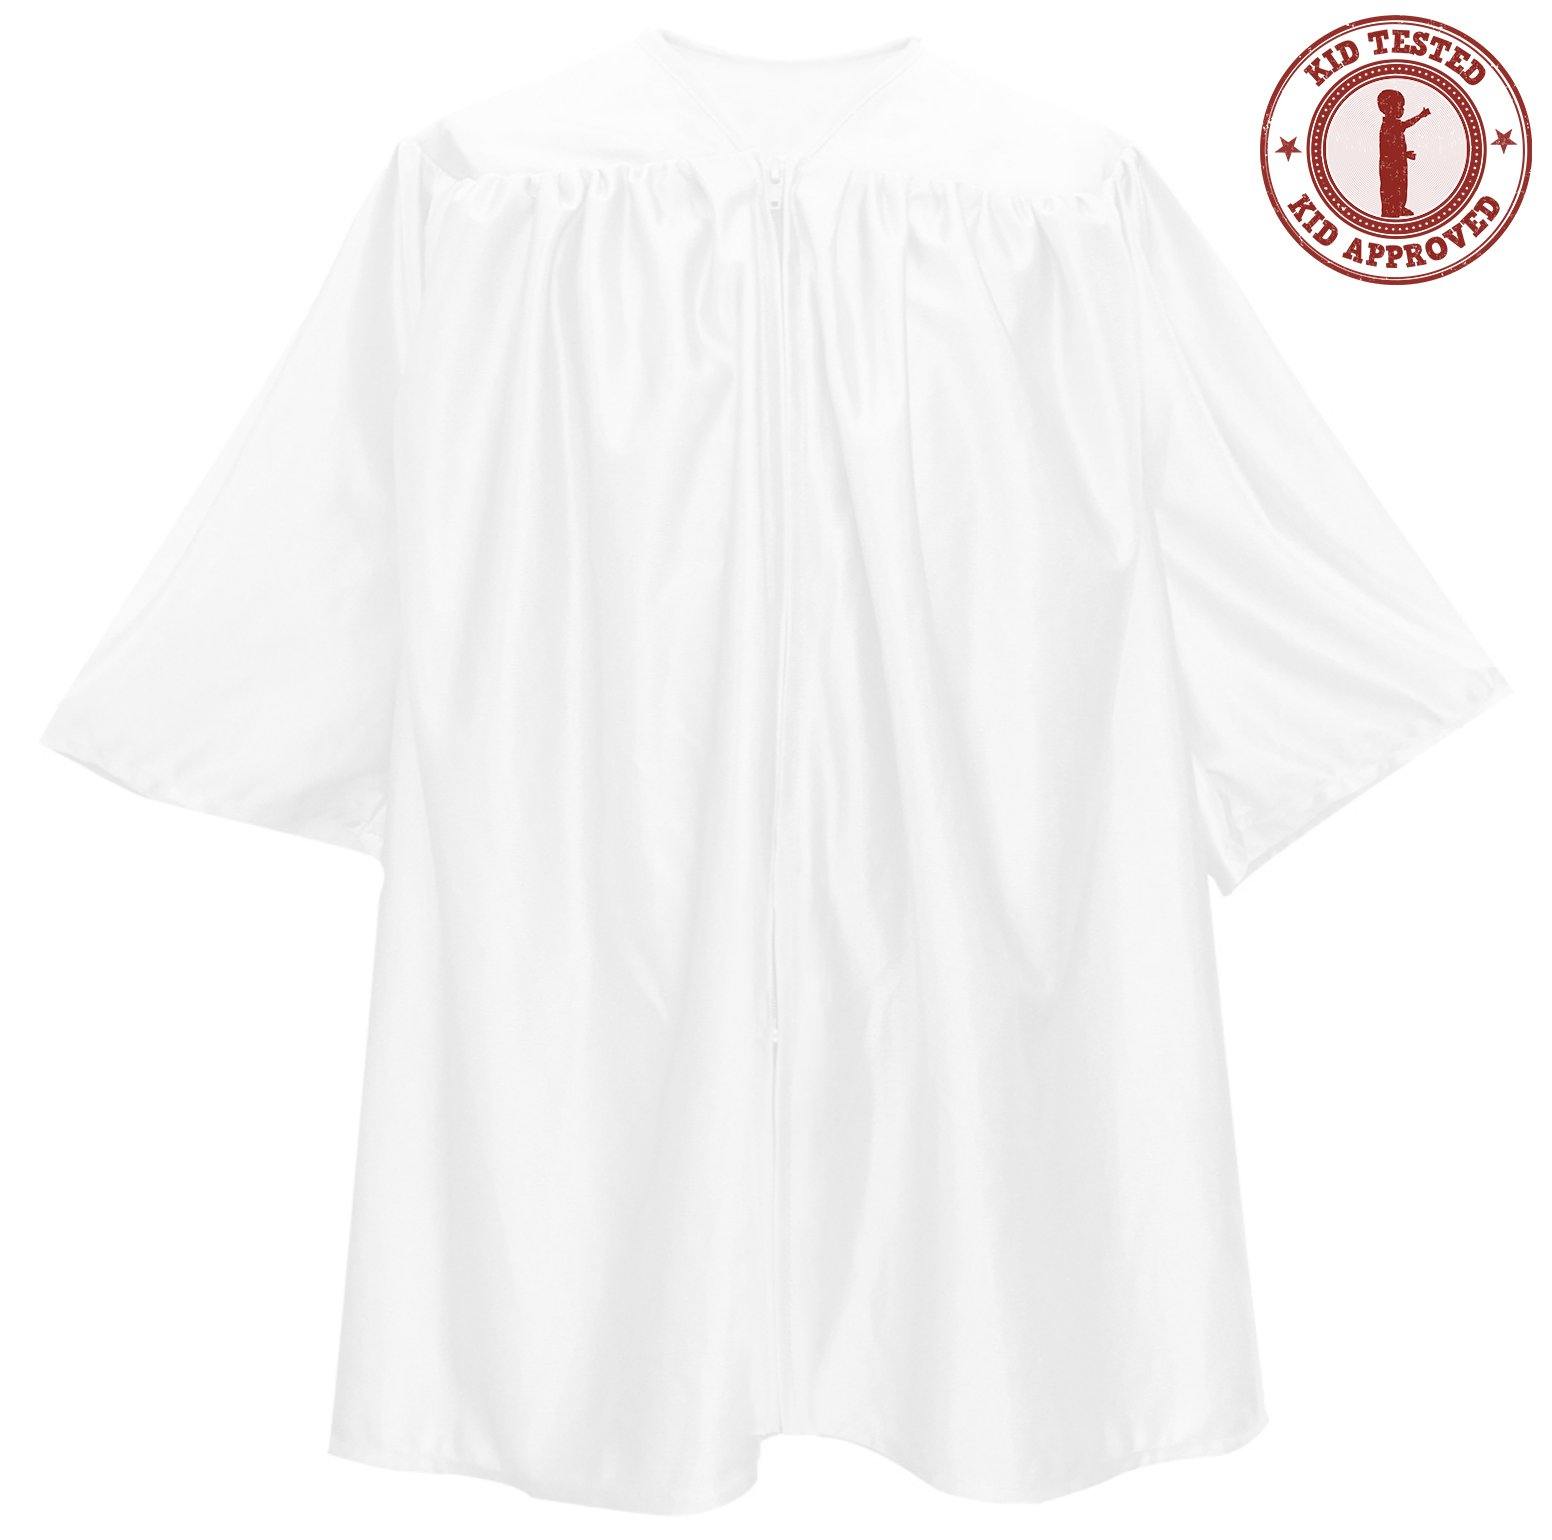 Child White Graduation Gown - Preschool & Kindergarten Gowns - Graduation Attire